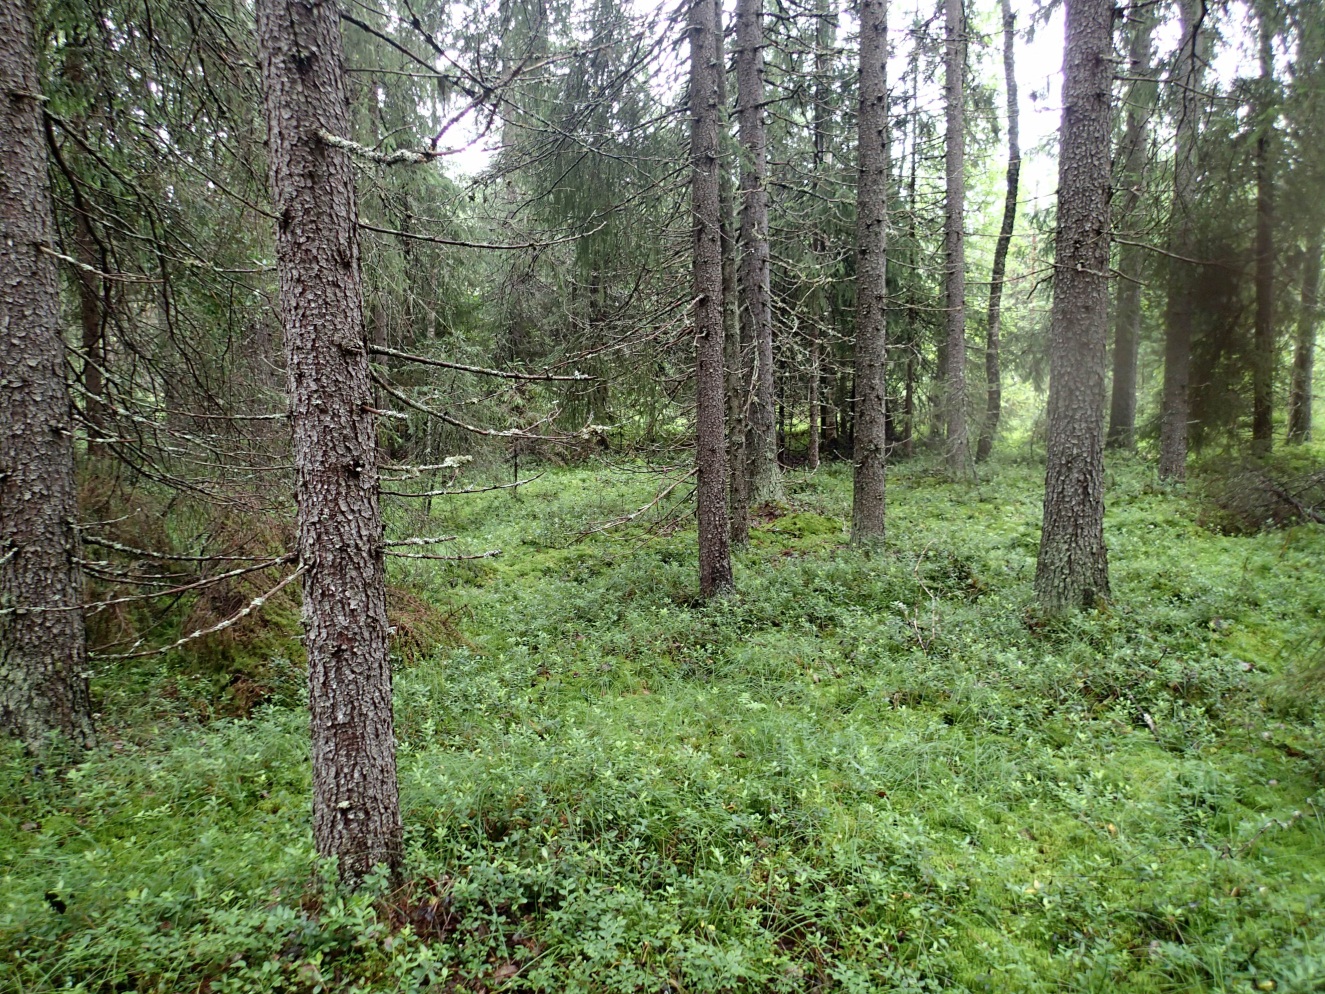 FCG SUUNNITTELU JA TEKNIIKKA OY Raportti 15 (30) lajistoa Kaakamajoen eteläpuolisella alueella ovat mm. metsäkorte, metsäkastikka, pallosara, mustikka, ojakellukka, siniyökönlehti ja isotalvikki.